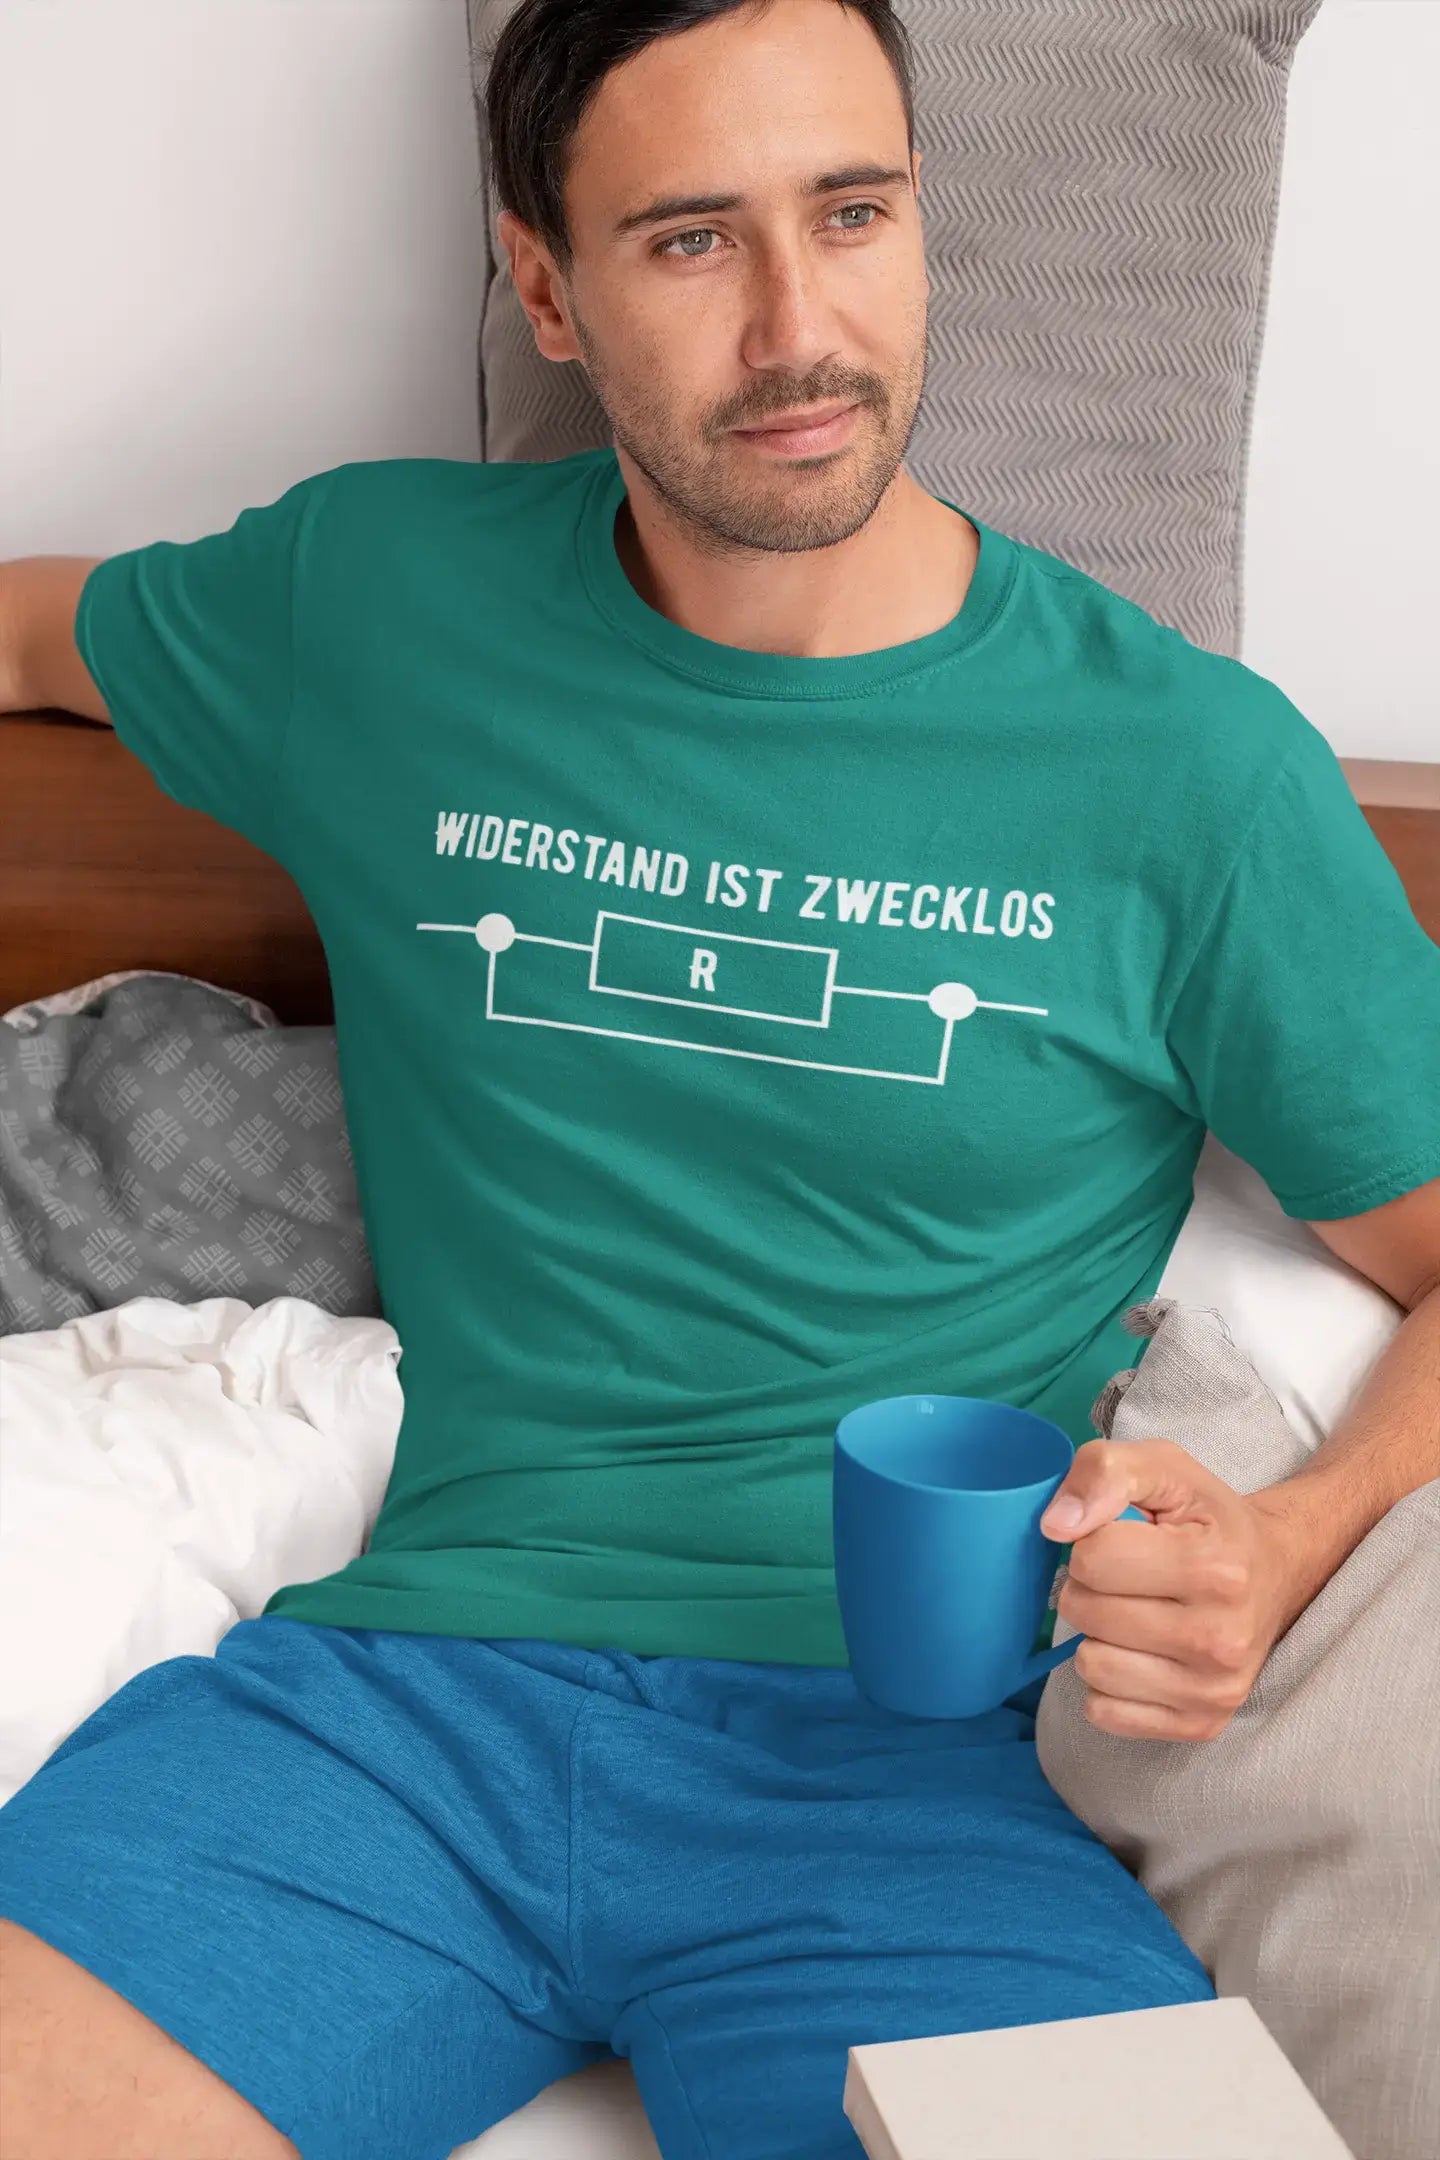 Men’s Graphic T-Shirt Widerstand Ist Zwecklos Lustige Military Green Gift Idea